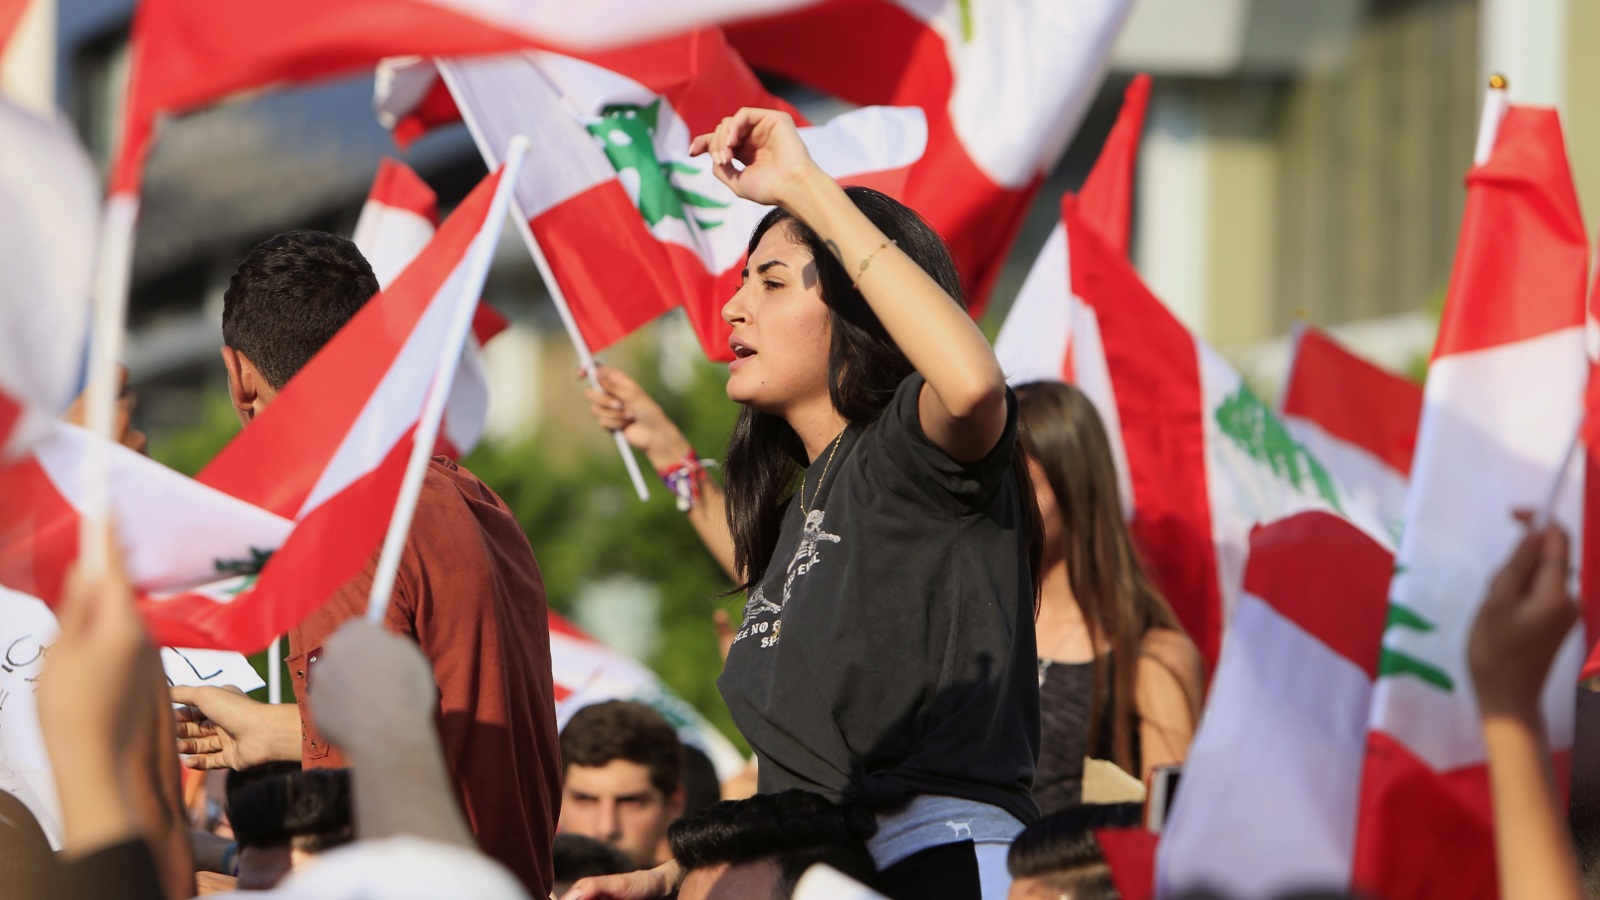 ‪الاحتجاجات عمت مناطق عدة من لبنان وشهدت اعتقال بعض المتظاهرين (رويترز)‬ الاحتجاجات عمت مناطق عدة من لبنان وشهدت اعتقال بعض المتظاهرين (رويترز)